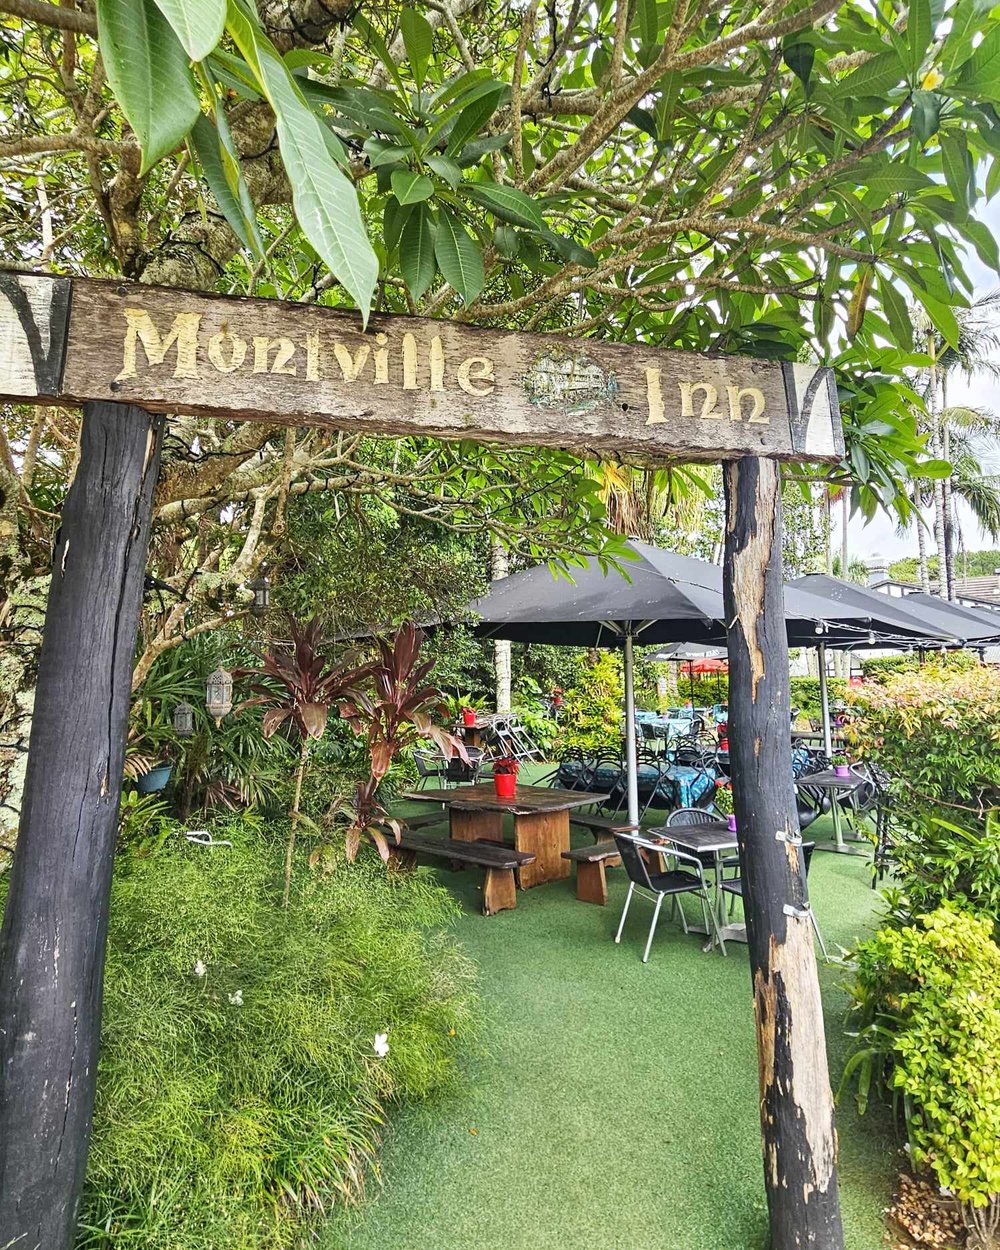 montville pub 1.jpg